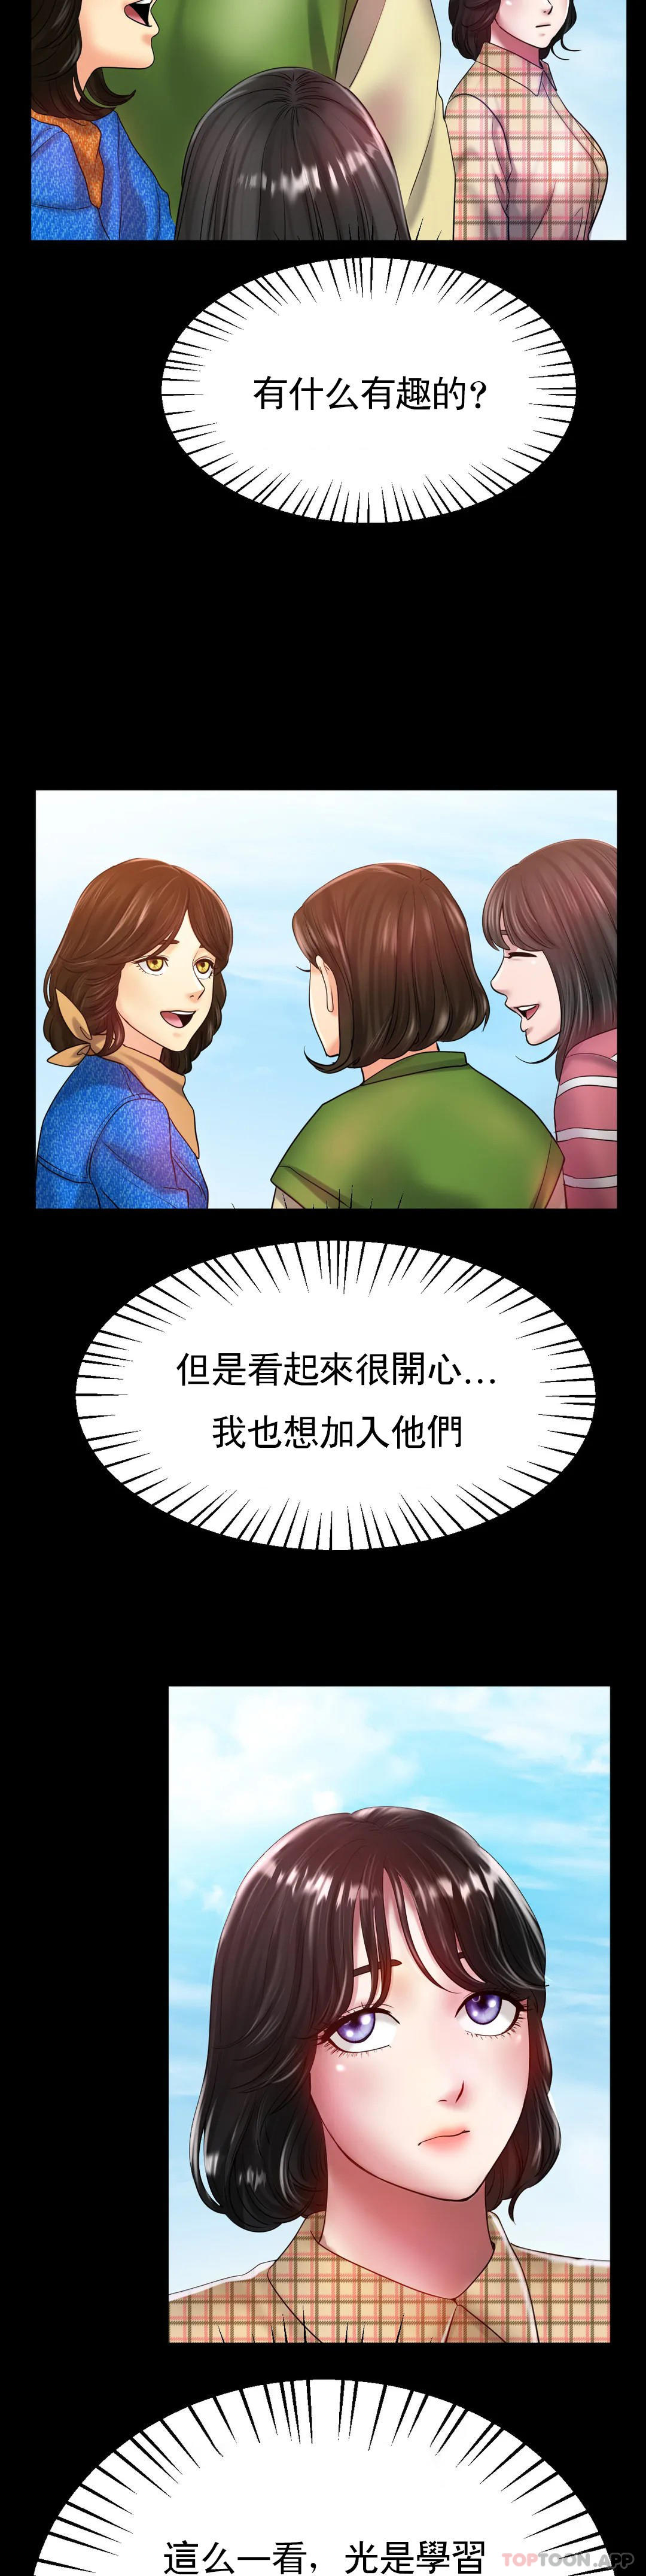 韩国污漫画 冰上的愛 第25话-妈妈的过往 20